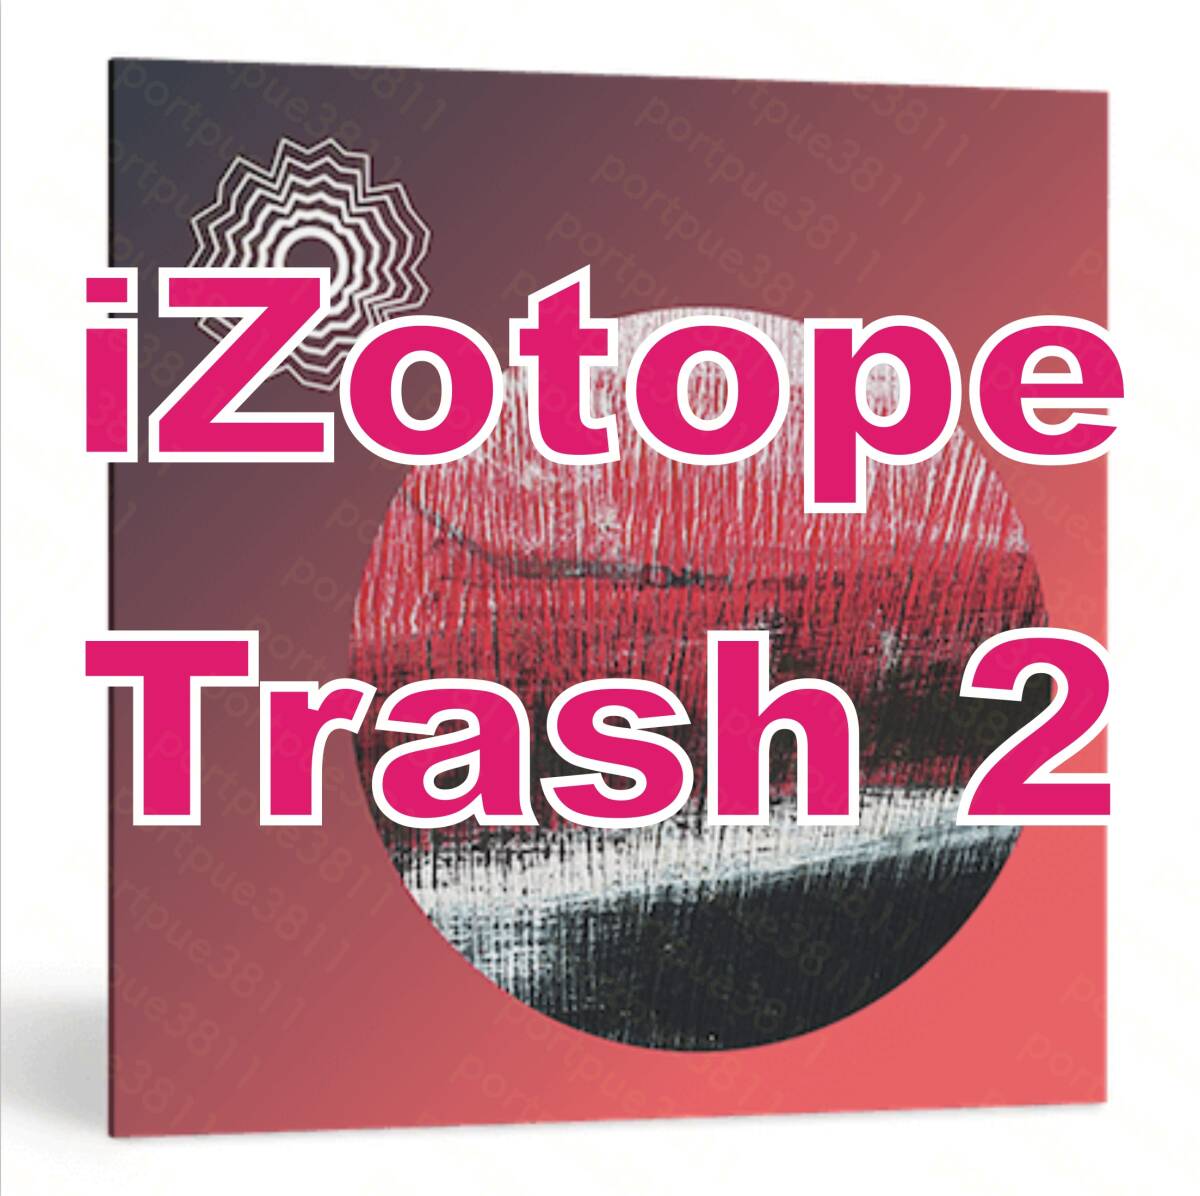  стандартный товар iZotope Trash 2 Distortion плагин загрузка версия не использовался Mac/Win